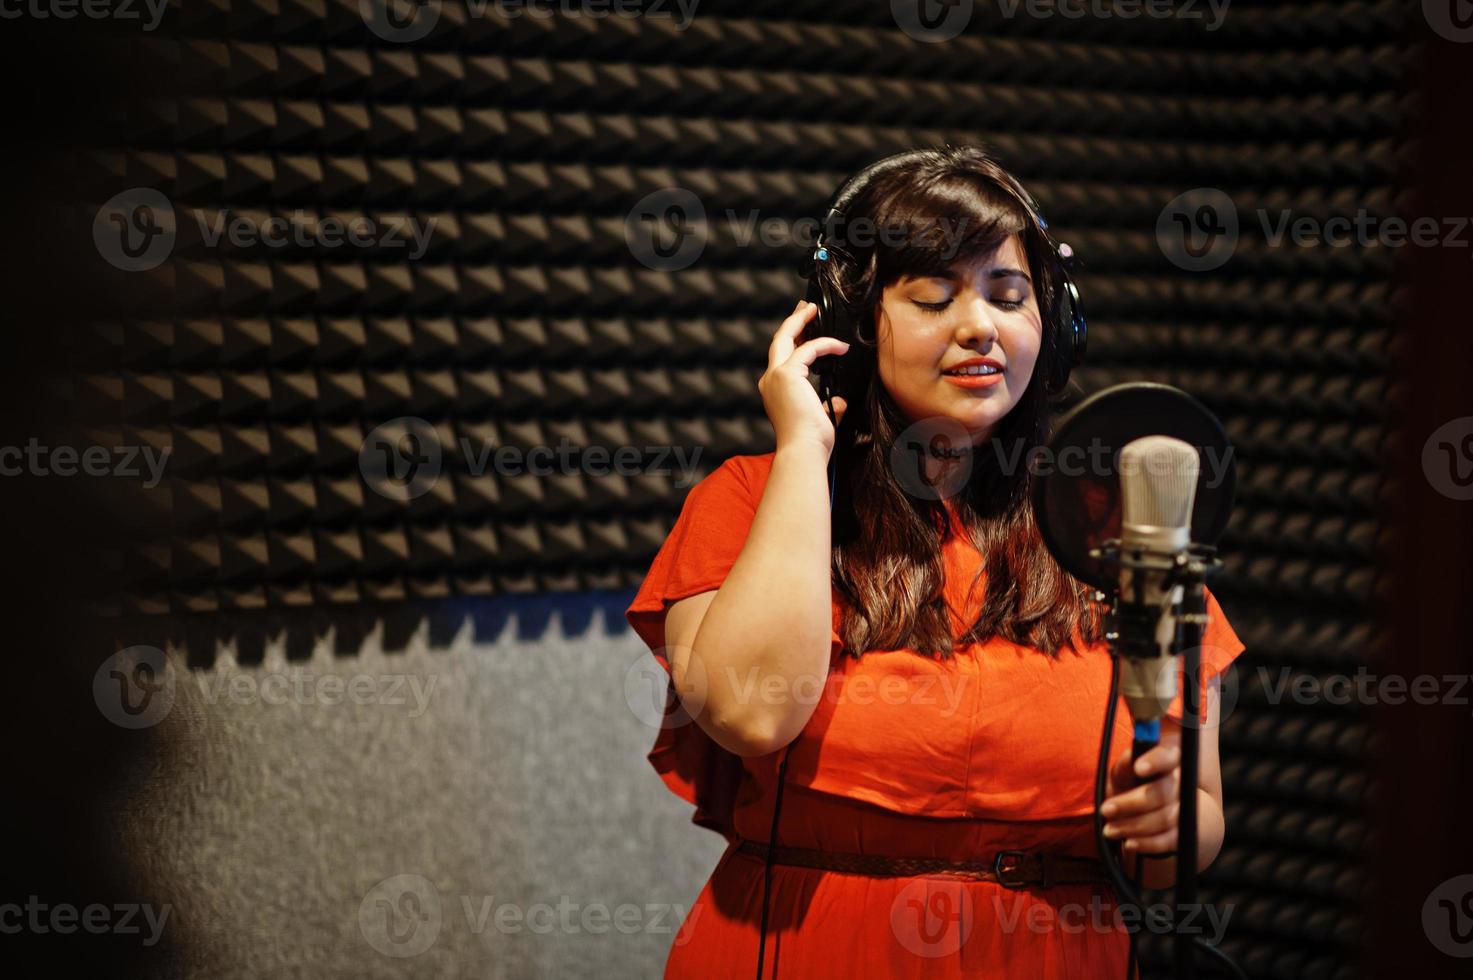 joven cantante asiático con micrófono grabando una canción en un estudio de grabación de música. foto